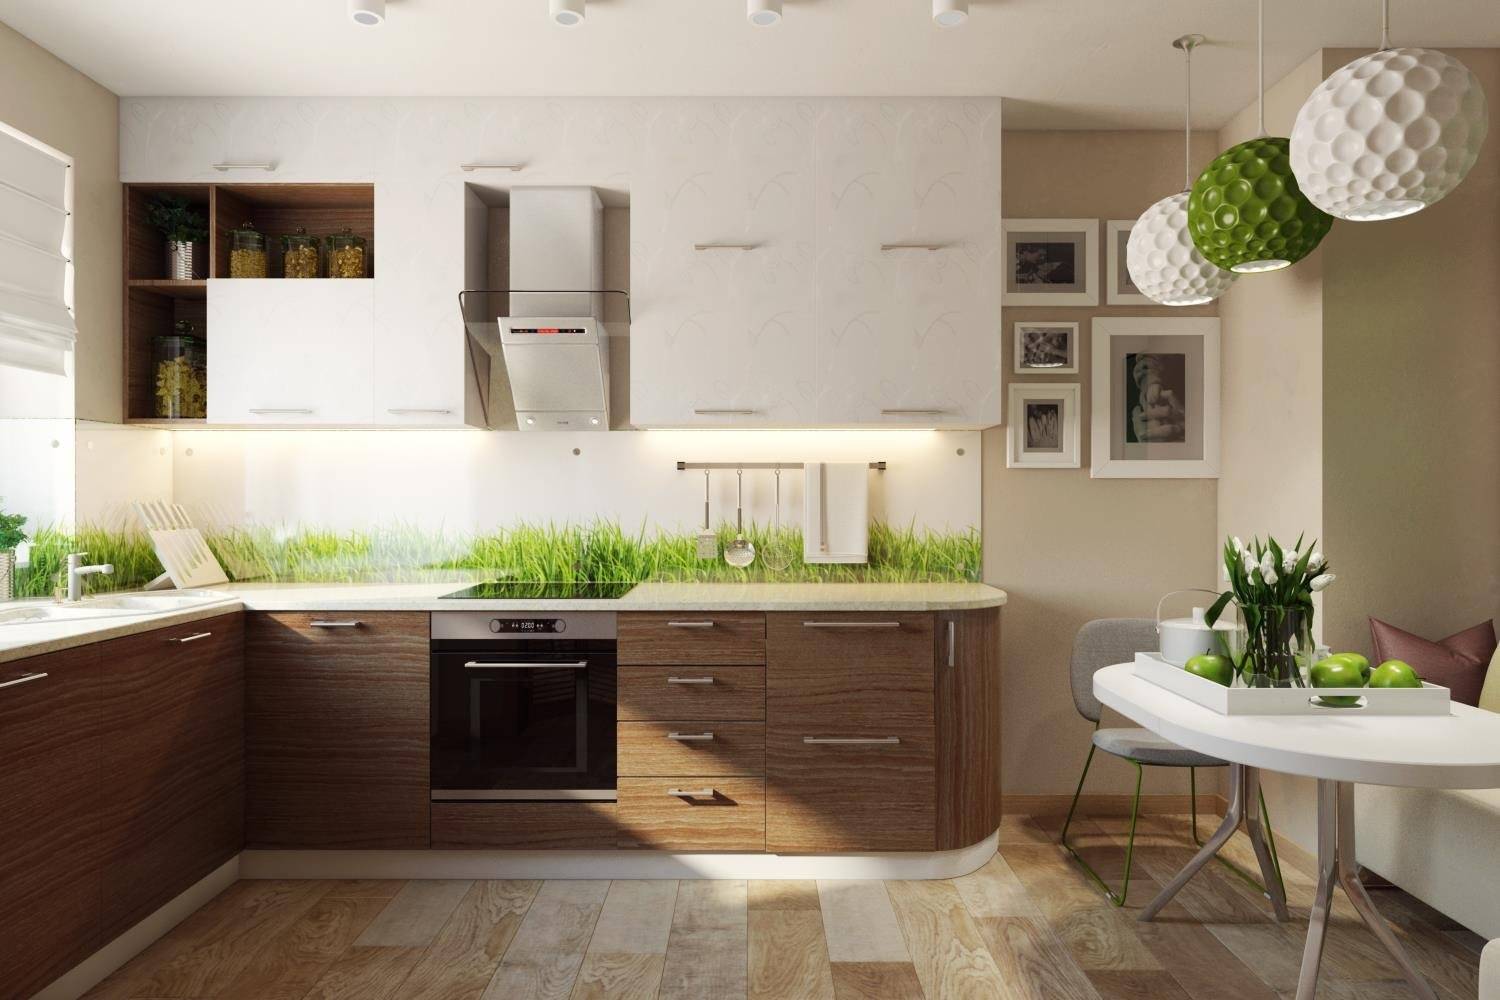 Дизайн кухни и столовой в стиле эко: 593 фото лучших интерьеров на inmyroom